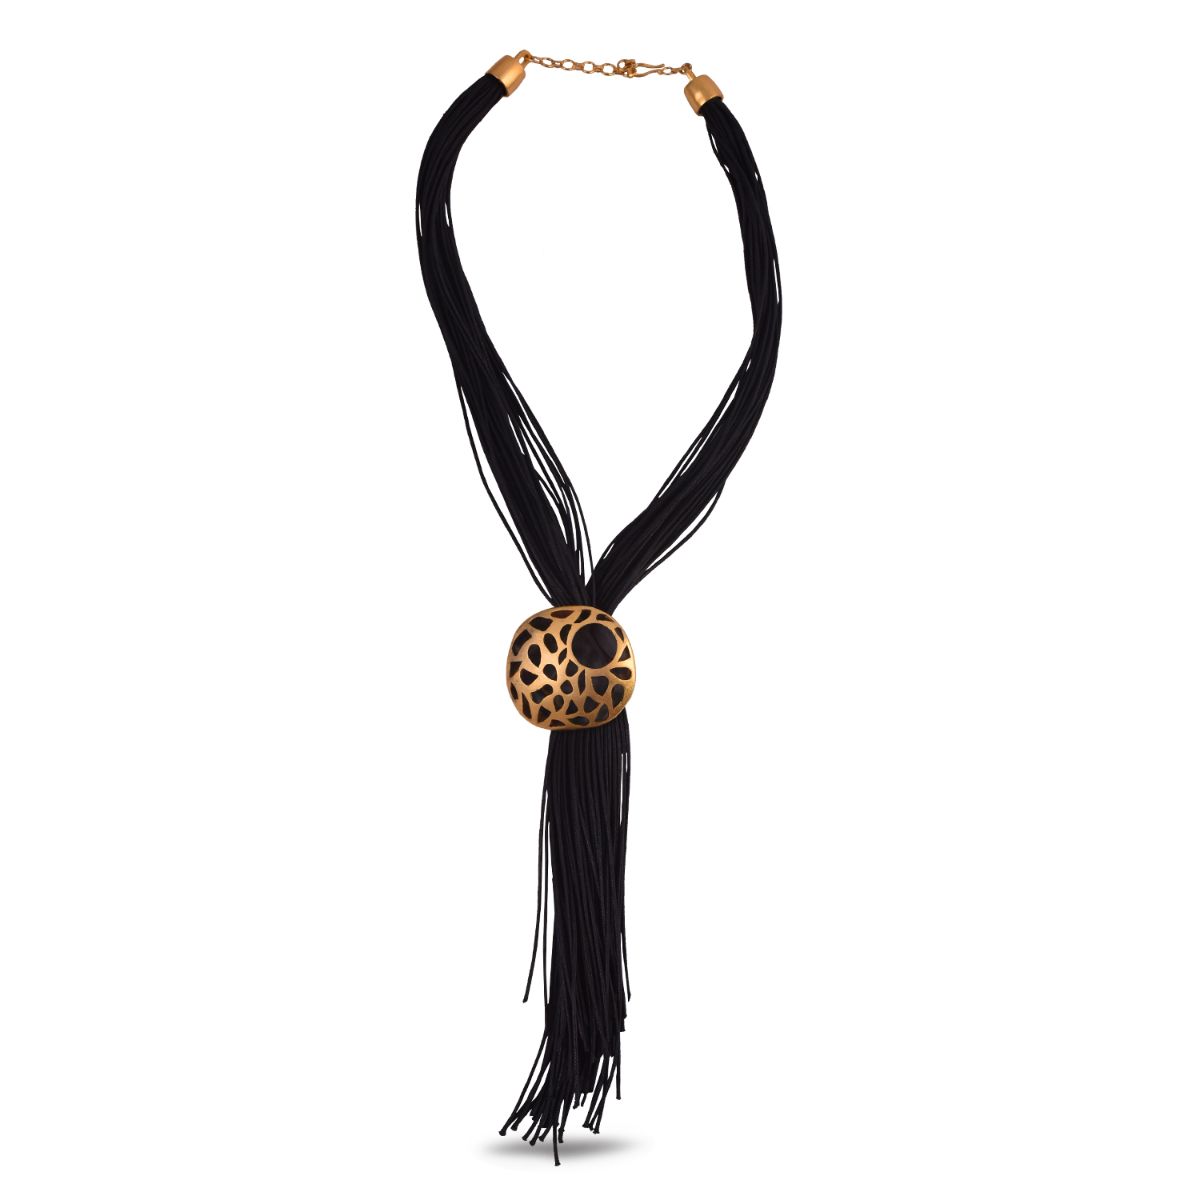 Adjustable black cord necklace